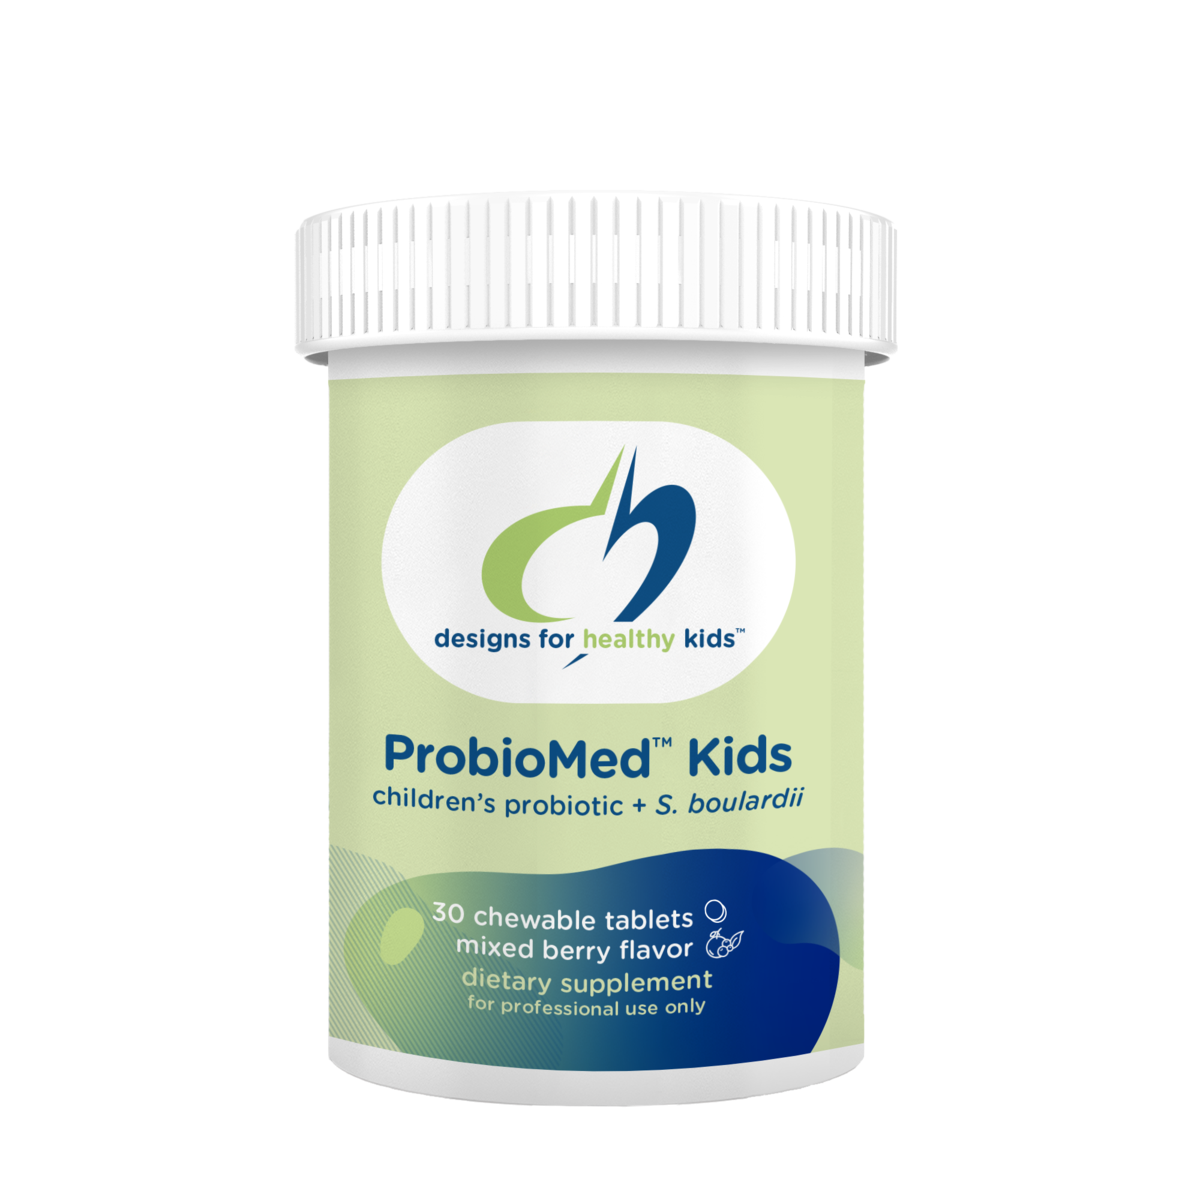 ProbioMed Kids